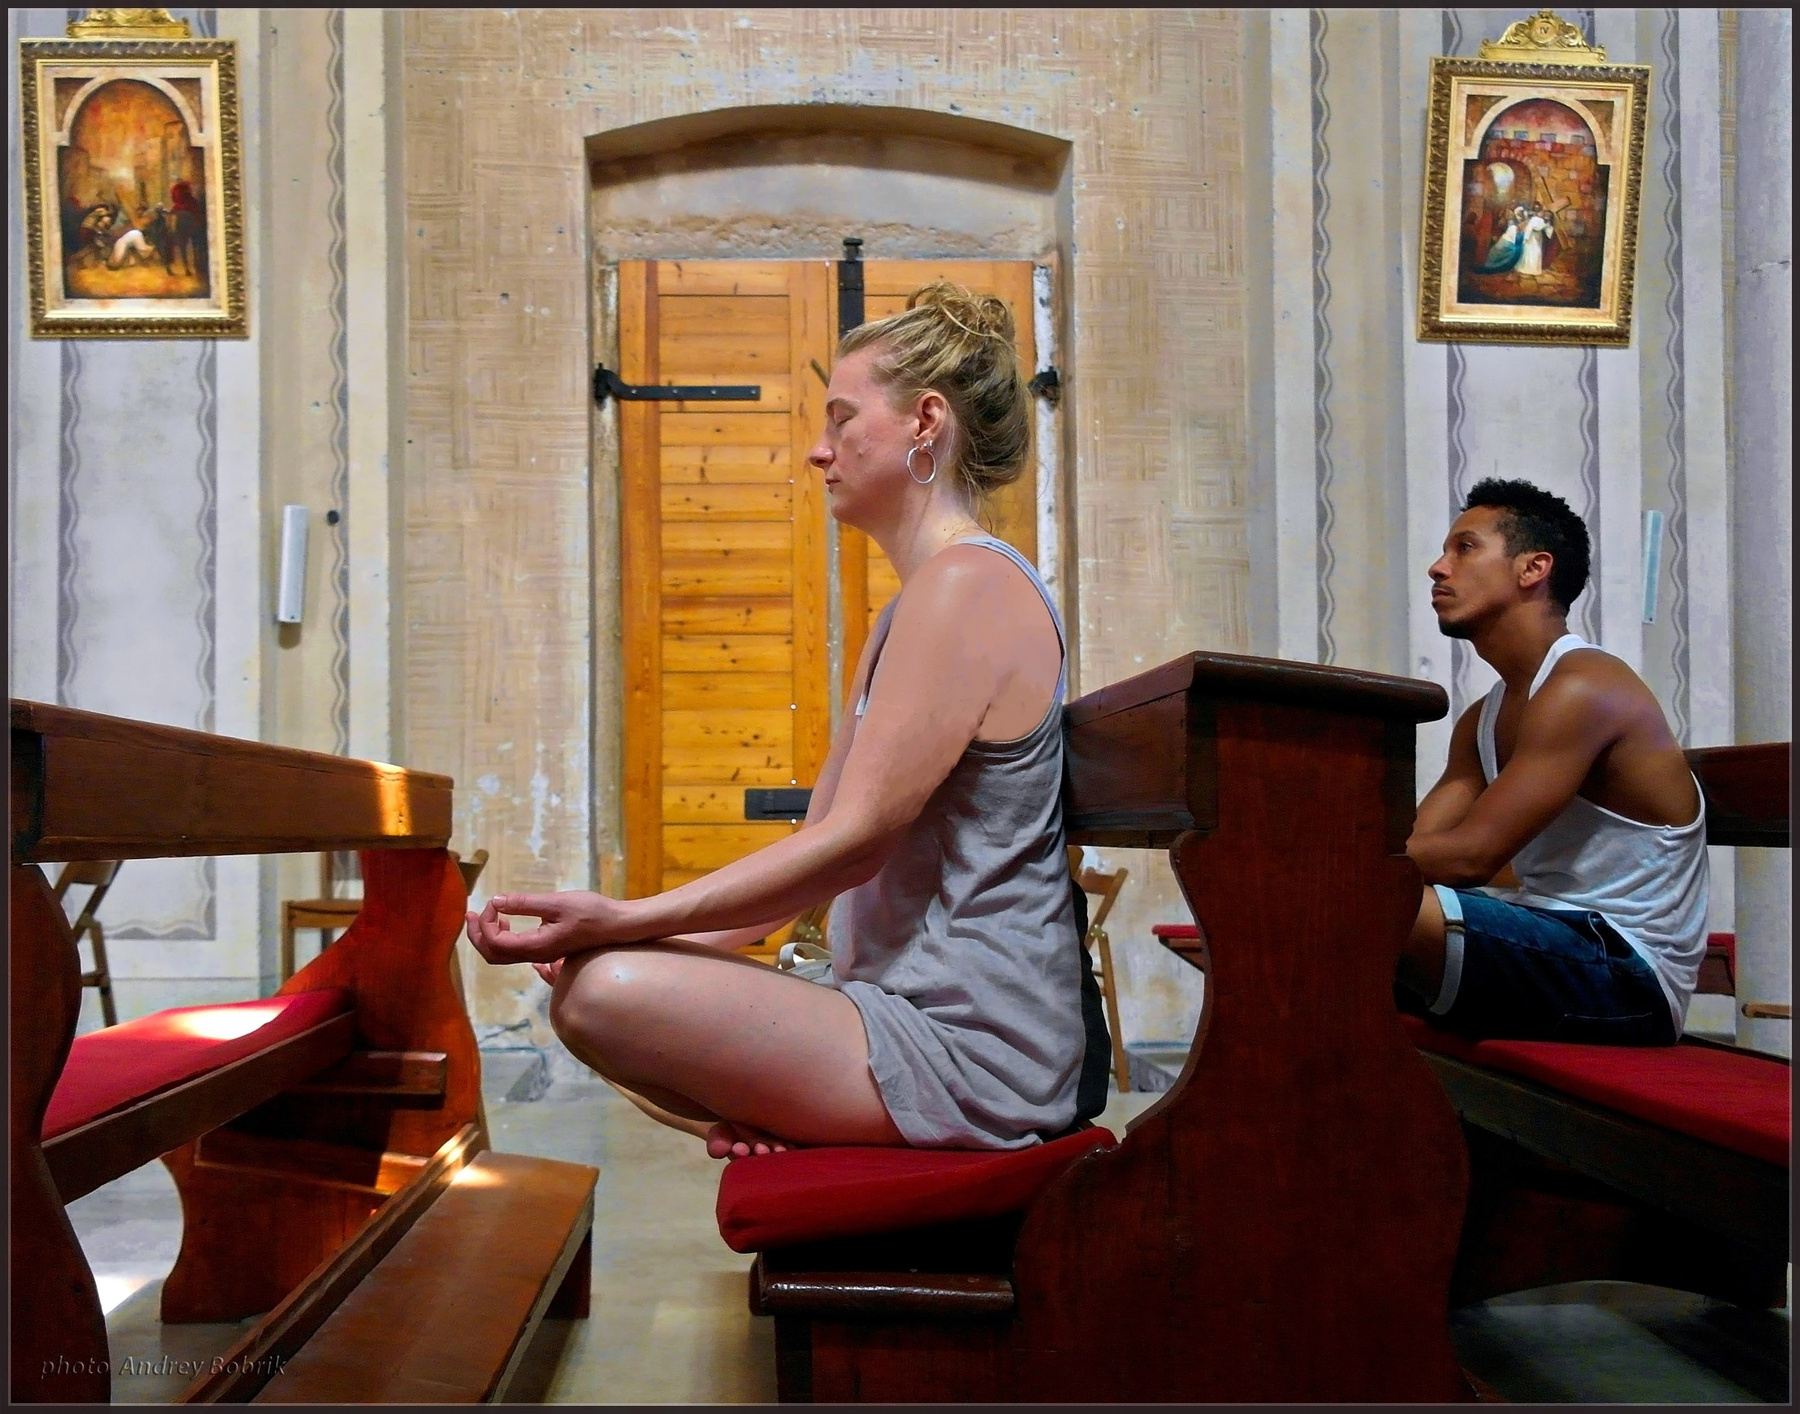 Медитация в церкви Хорватия Врсар интерьер церковь Святого Мартина девушка медитация скамьи